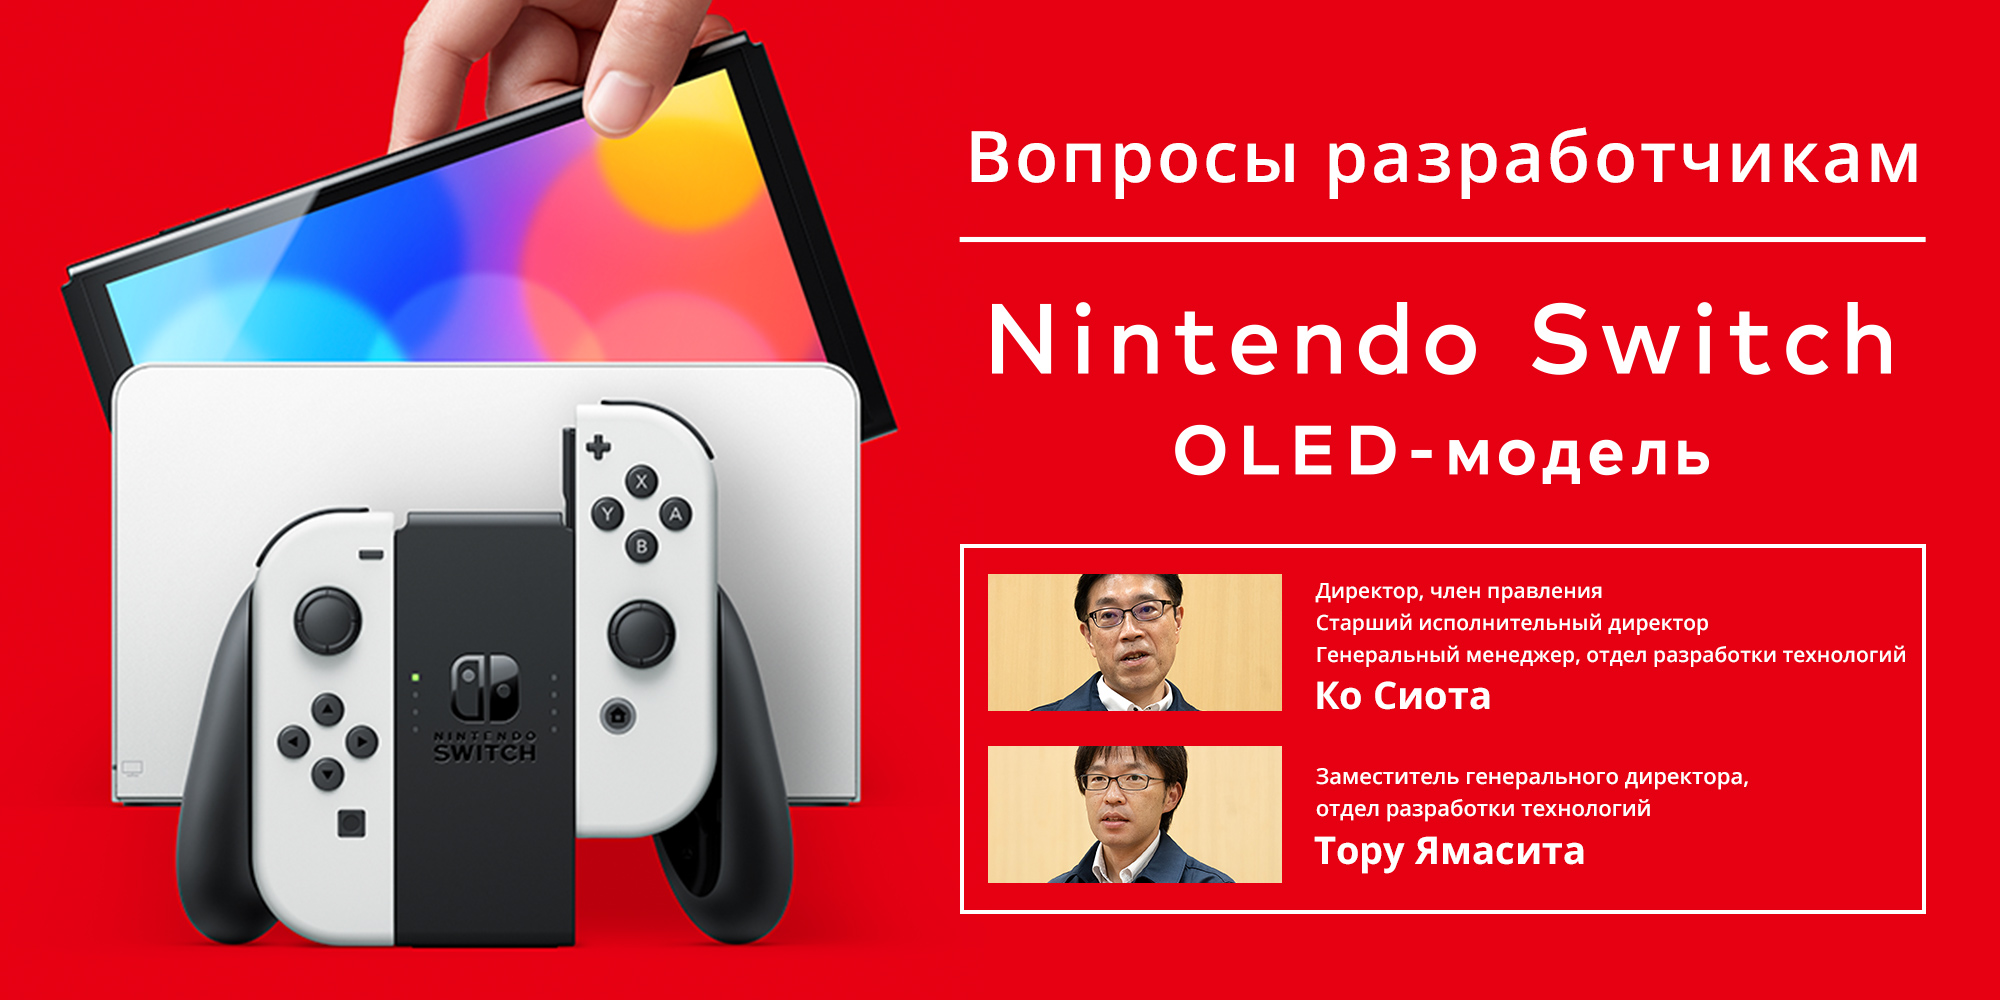 Вопросы разработчикам, часть 2: Nintendo Switch – OLED-модель